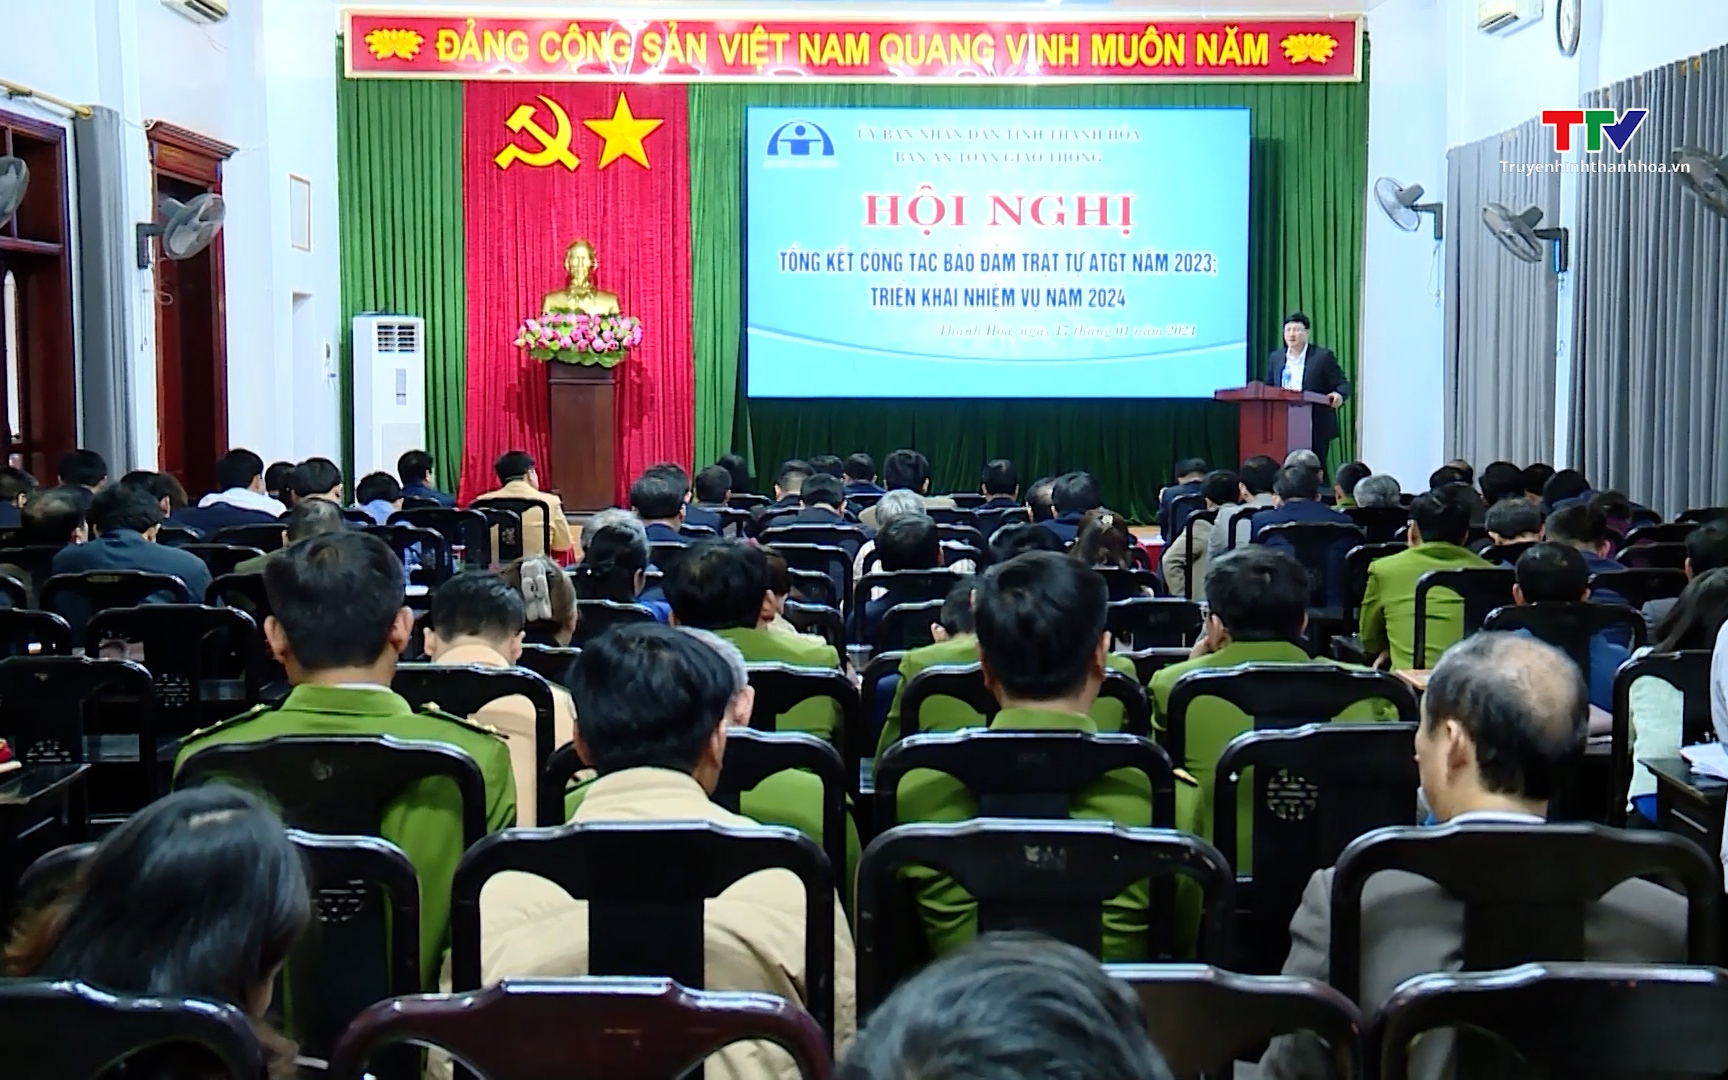 Ban An toàn giao thông tỉnh Thanh Hoá triển khai nhiệm vụ năm 2024